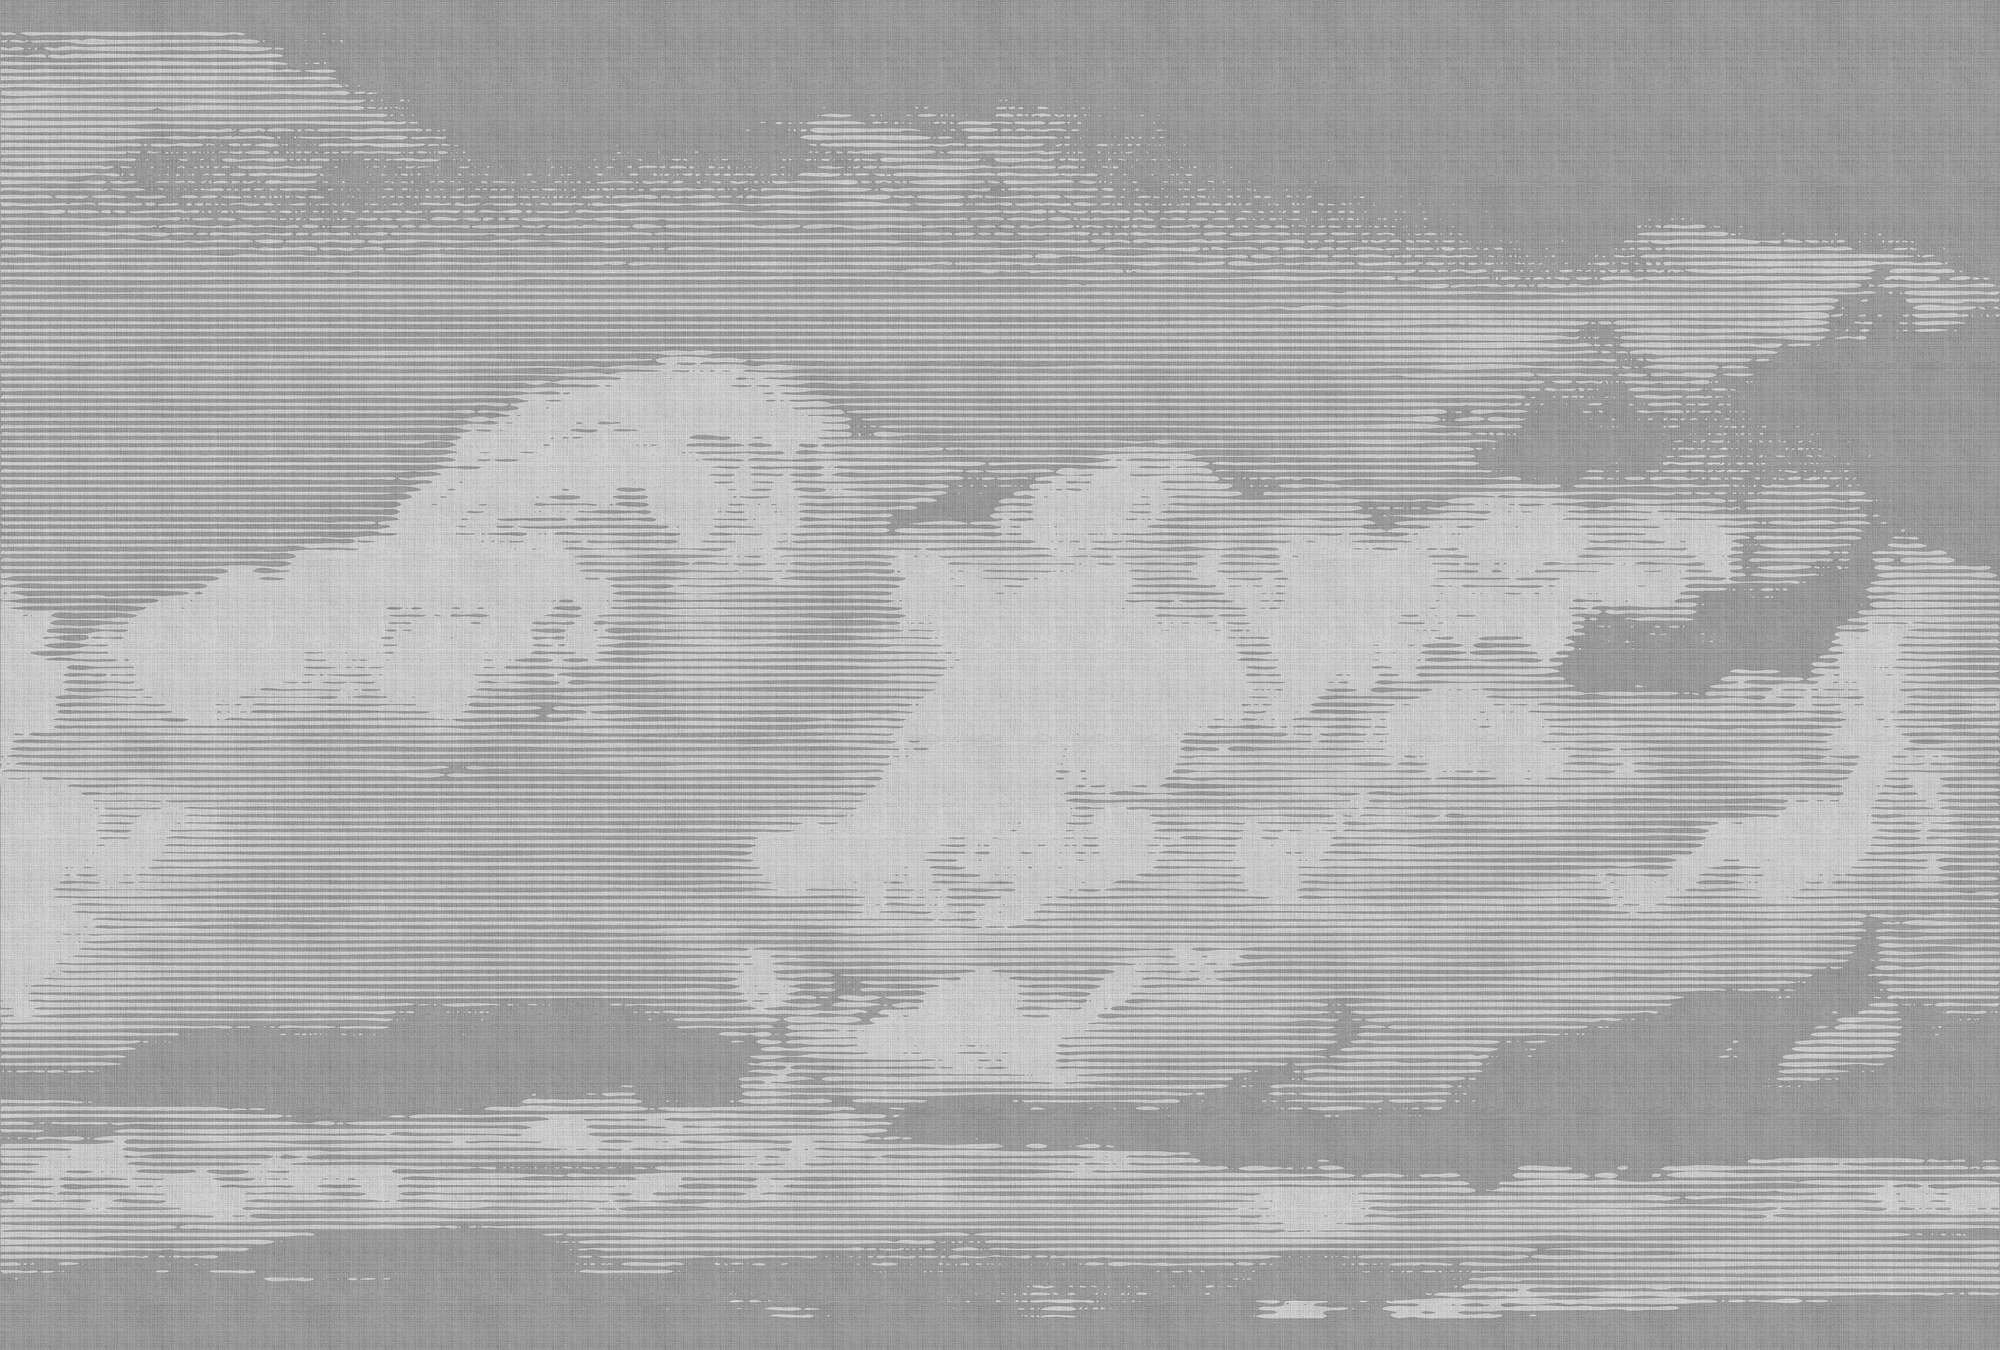             Clouds 2 - Papel pintado celestial en estructura de lino natural con motivo de nubes - Gris, Blanco | Perla vellón liso
        